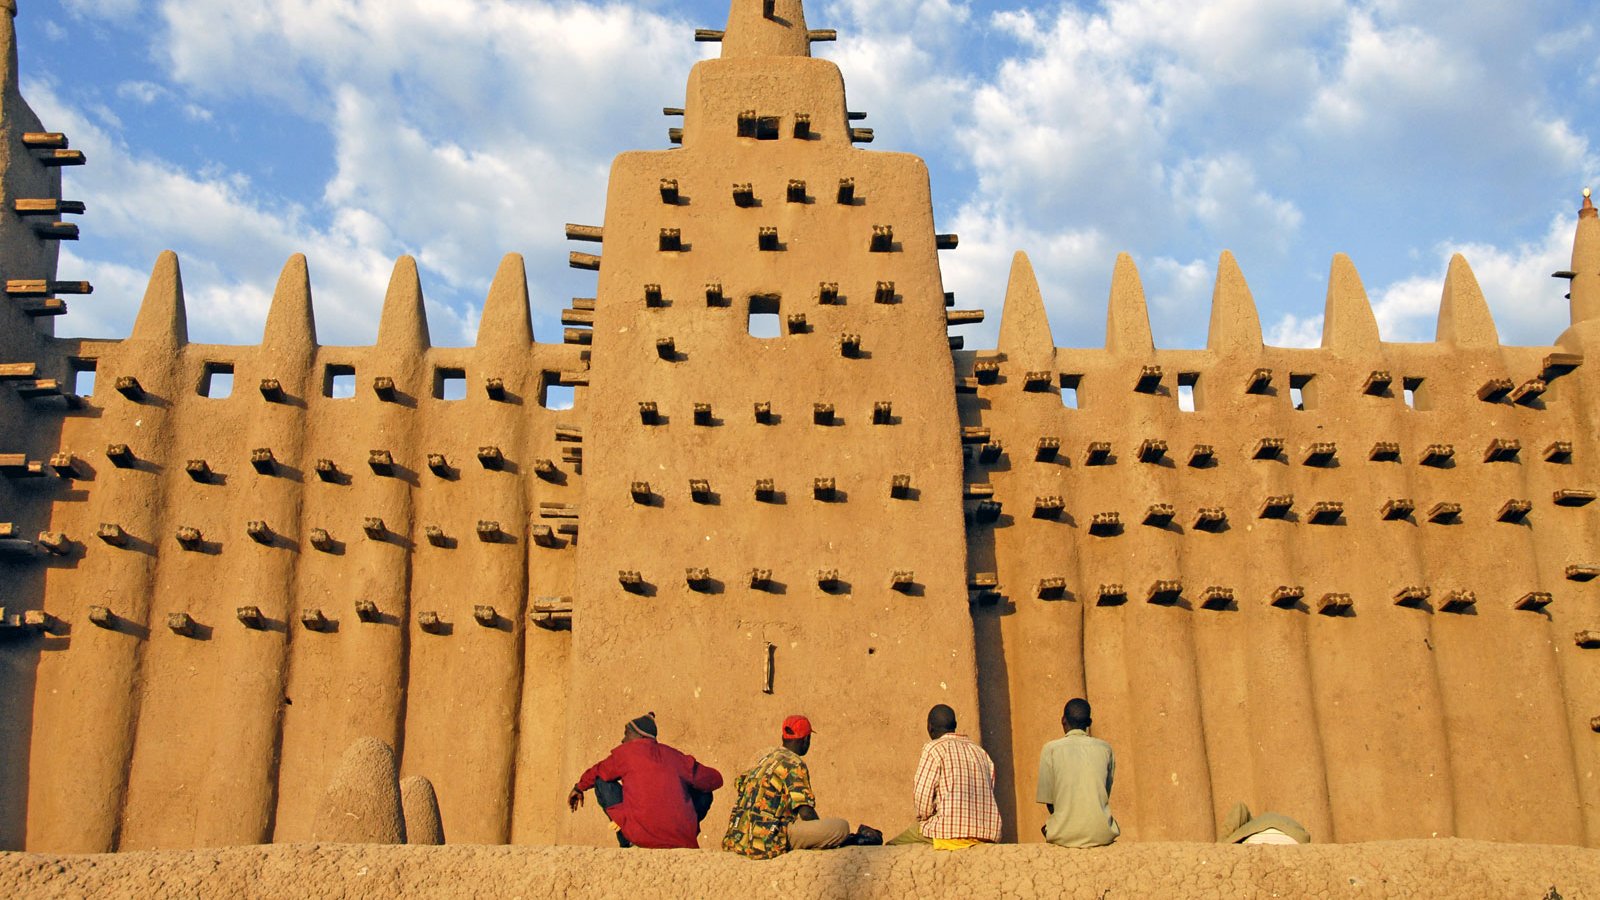 Au Mali, la grande mosquée de Djenne se distingue par son architecture extraordinaire
